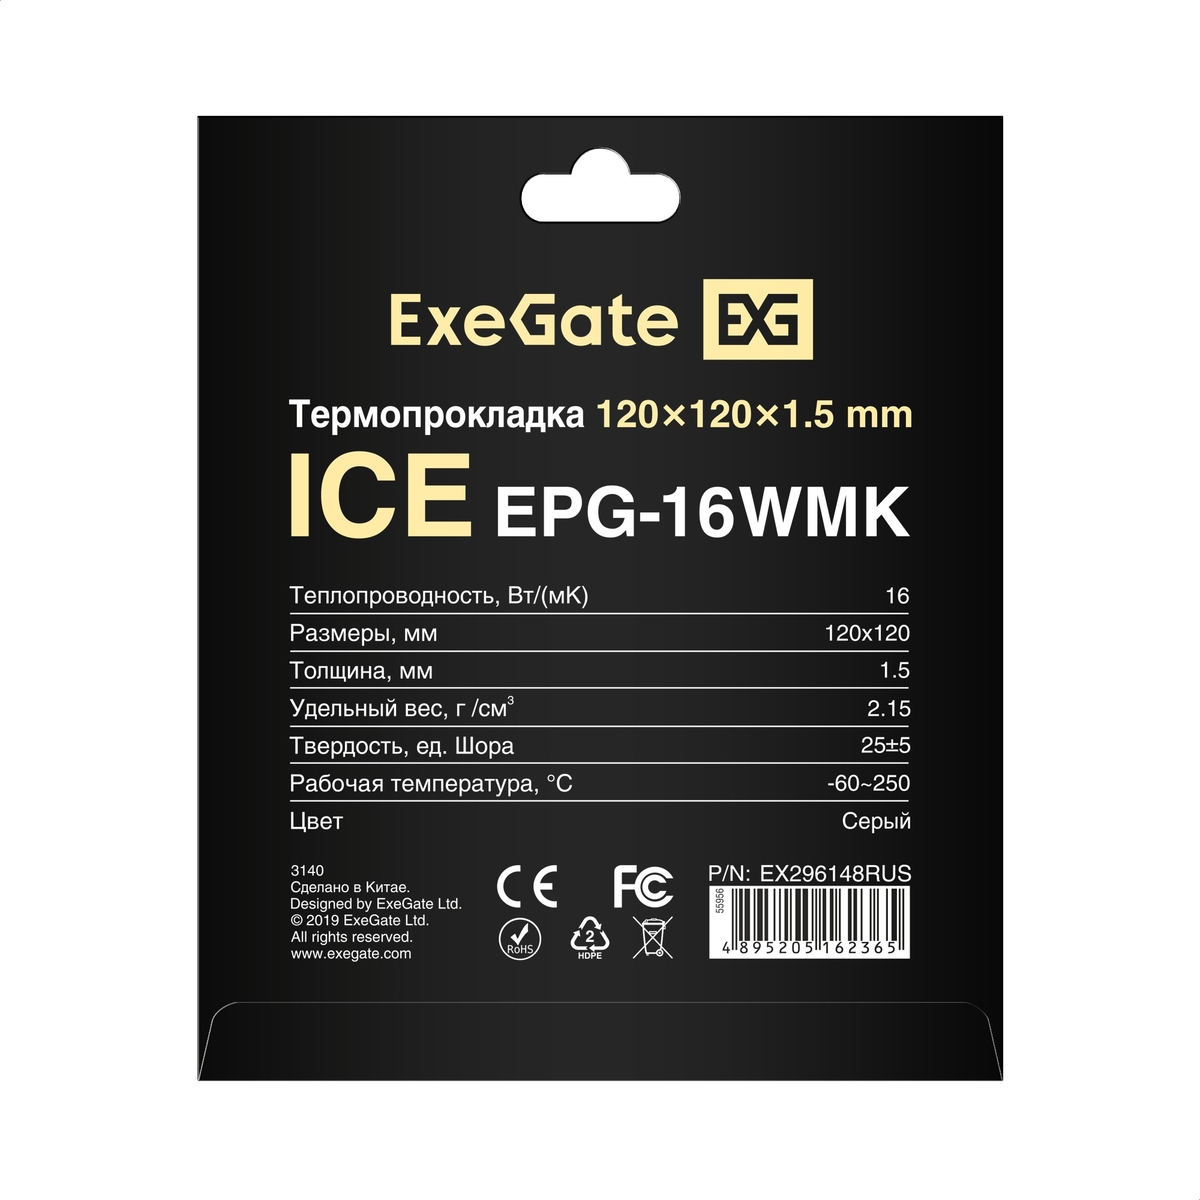  ExeGate Ice EPG-16WMK 120x120x1.5